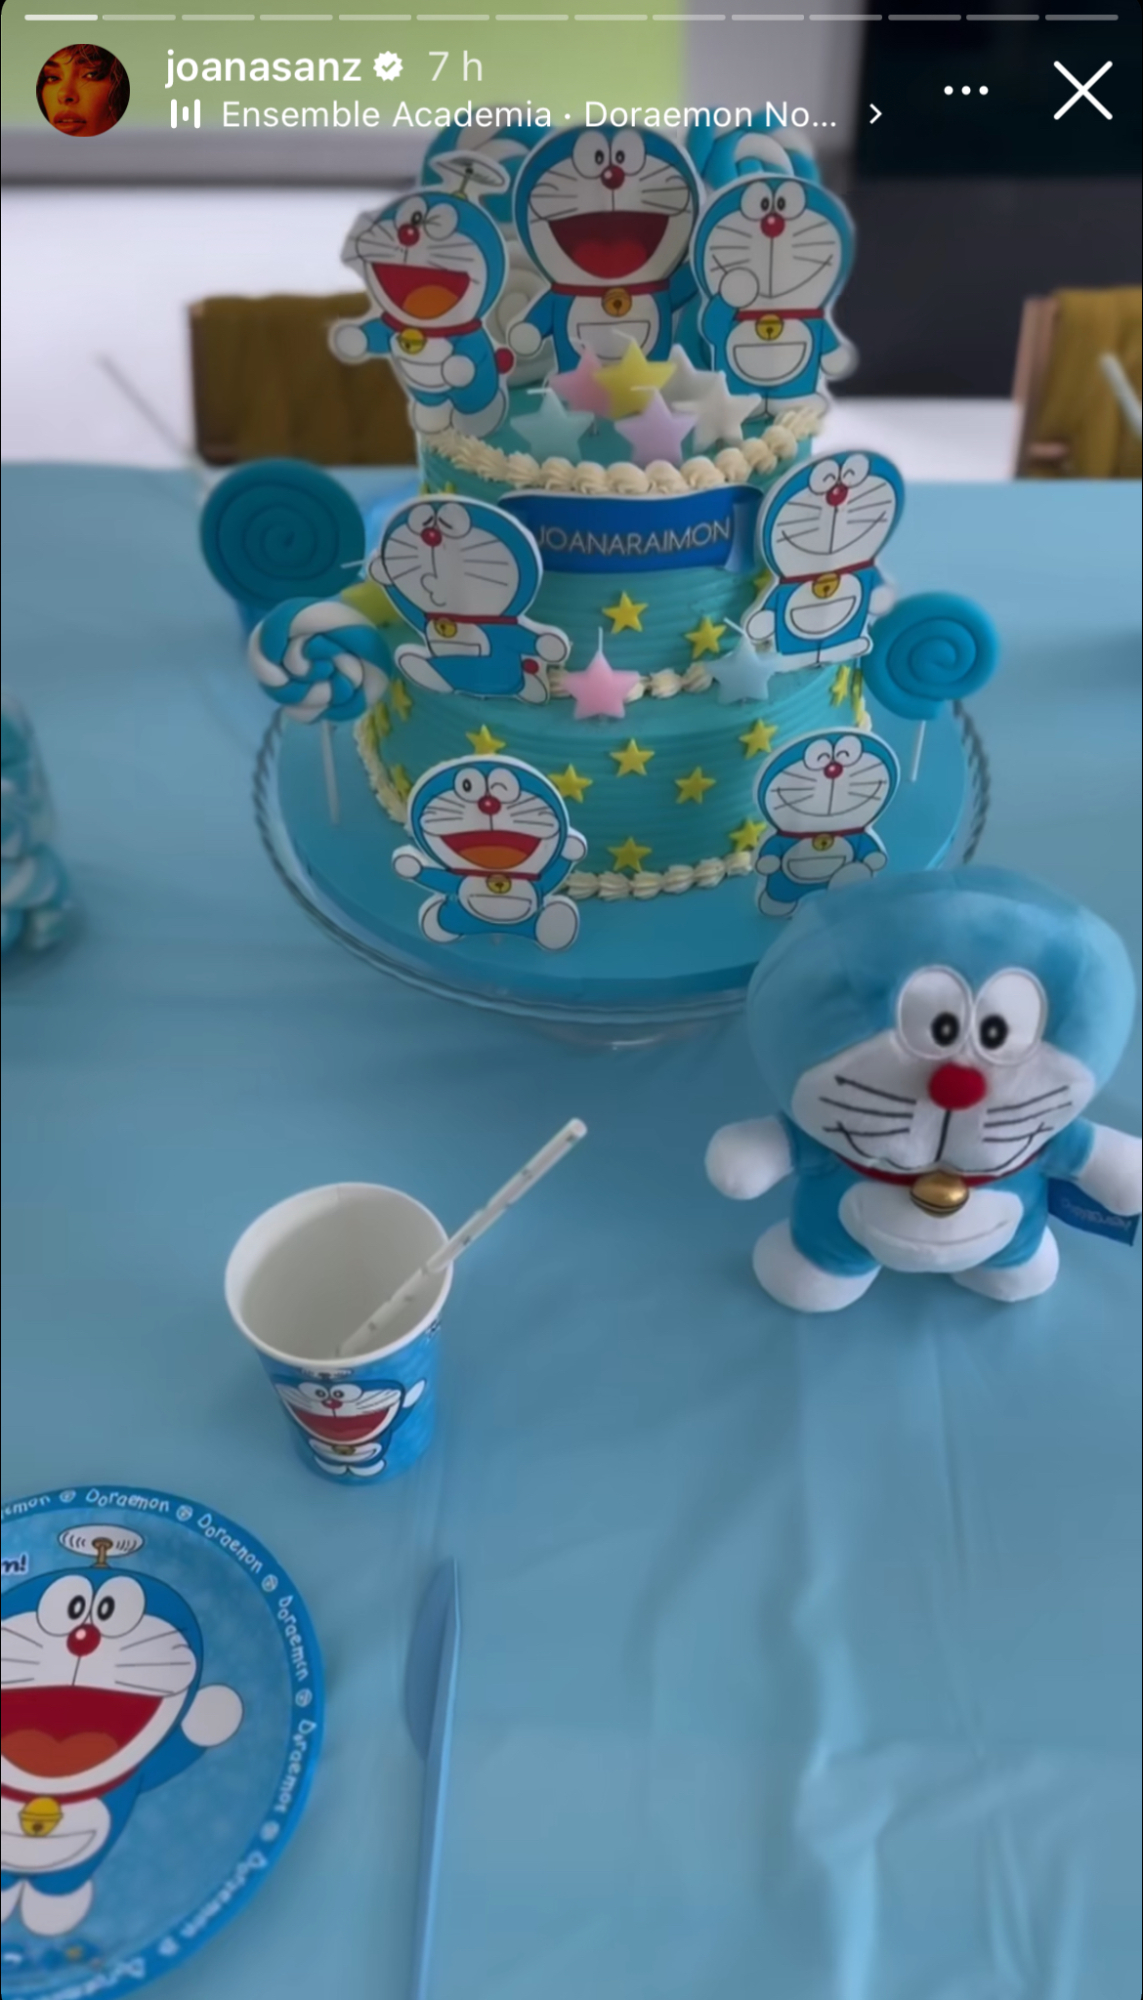 La modelo ha elegido a Doraemon para ser el protagonista de su tarta